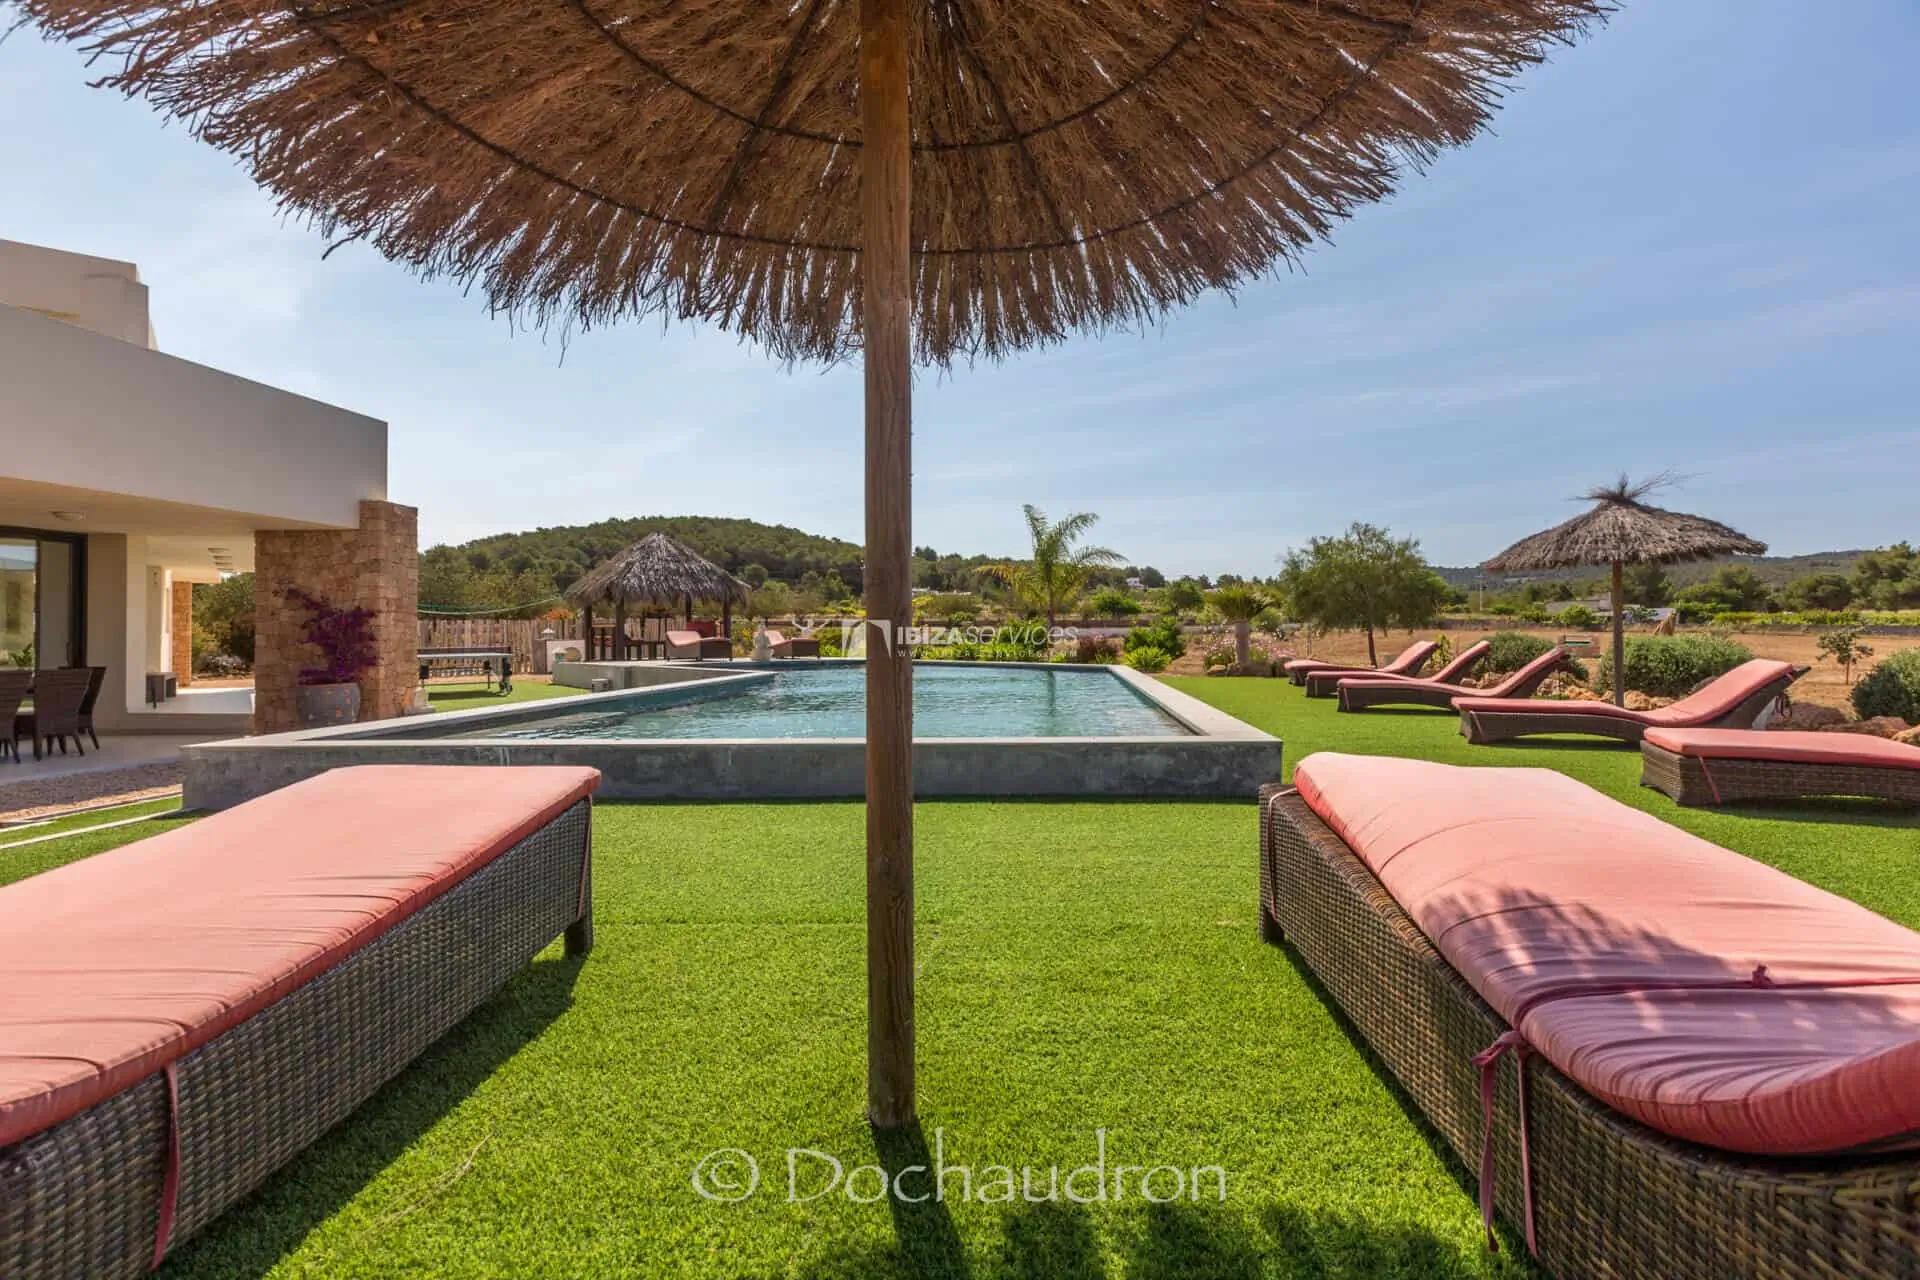 Vakantievilla met 5 slaapkamers te huur in Sant Rafael, met een enorm zwembad